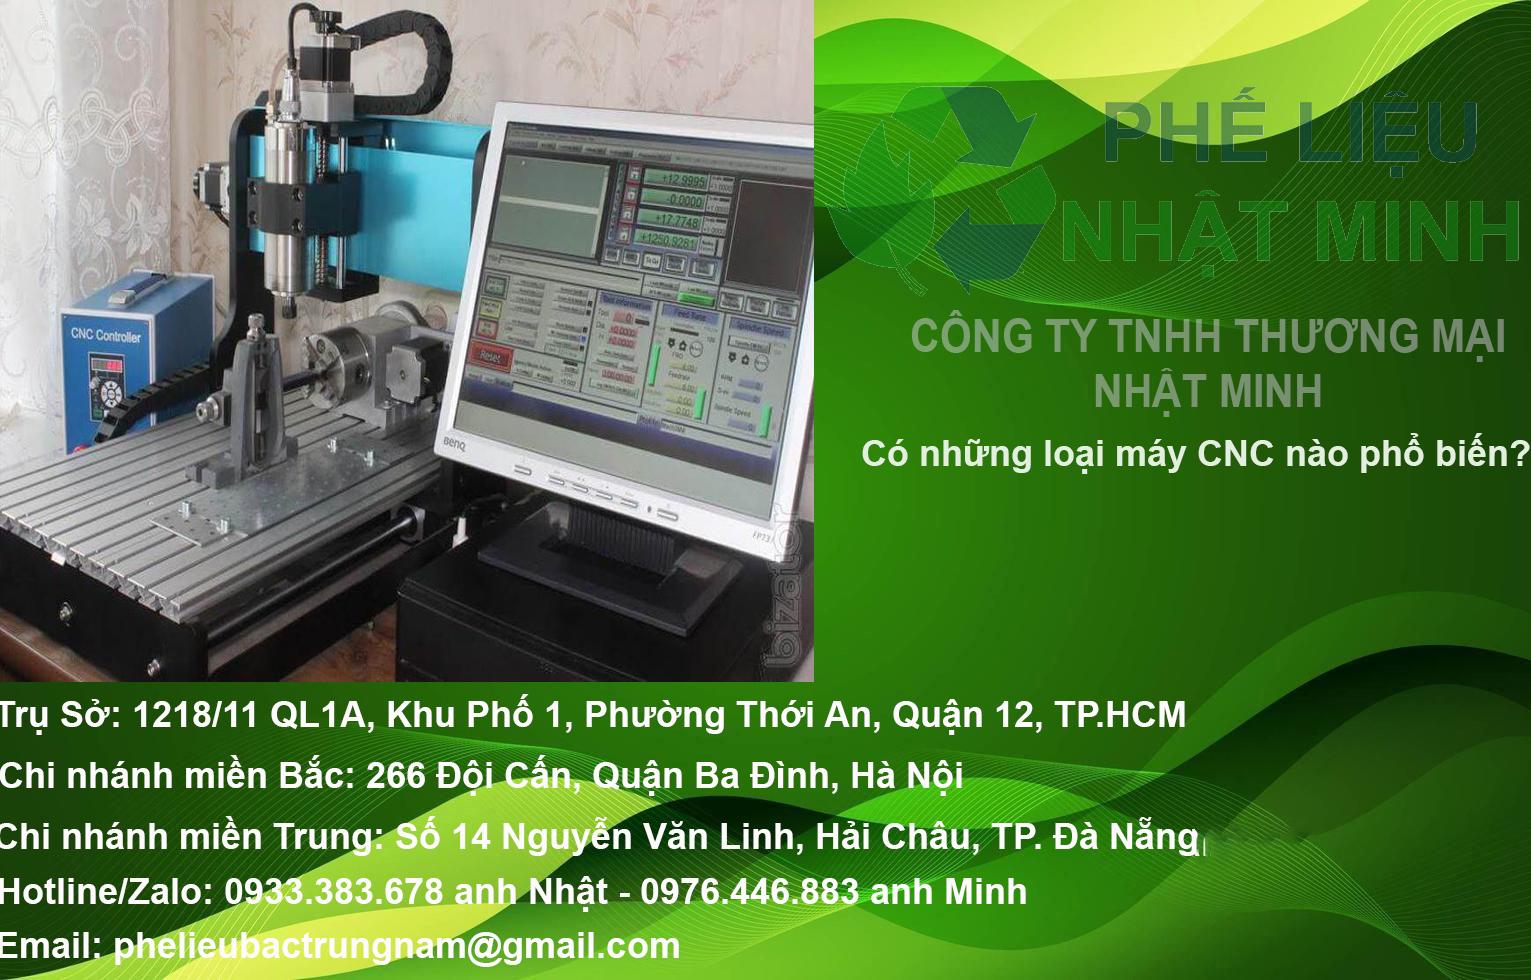 PHAN LOAI MAY CNC